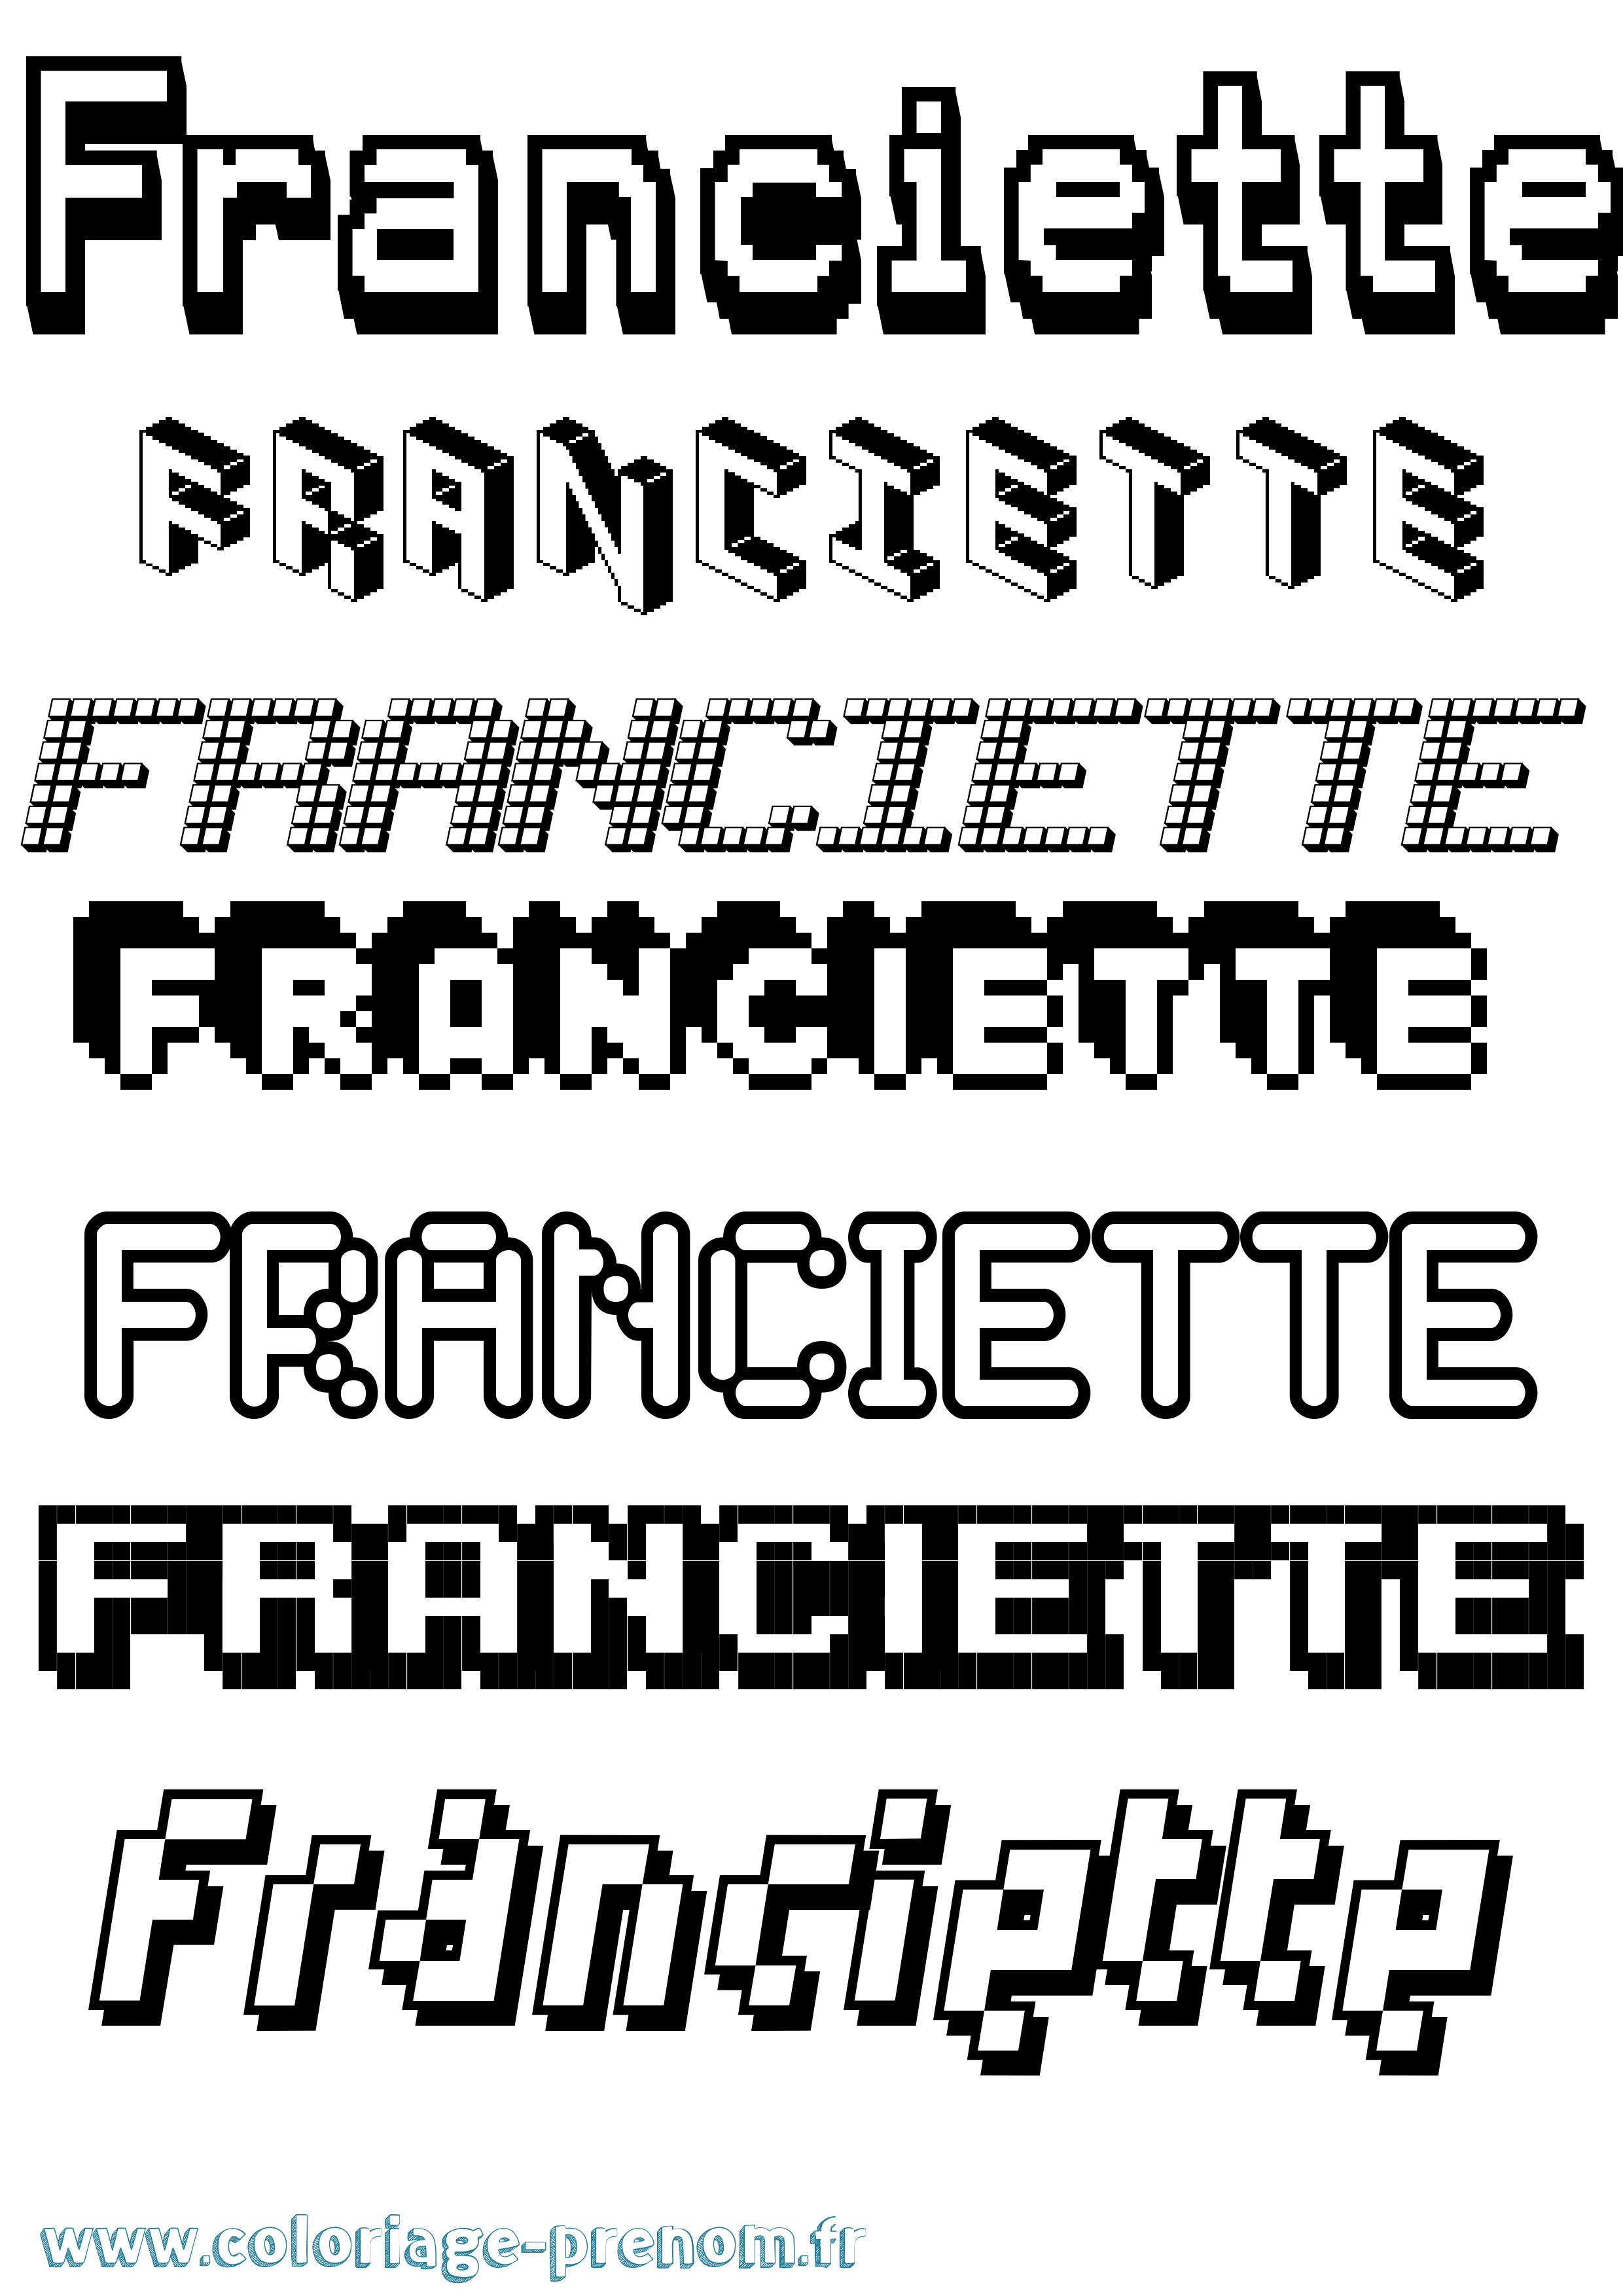 Coloriage prénom Franciette Pixel